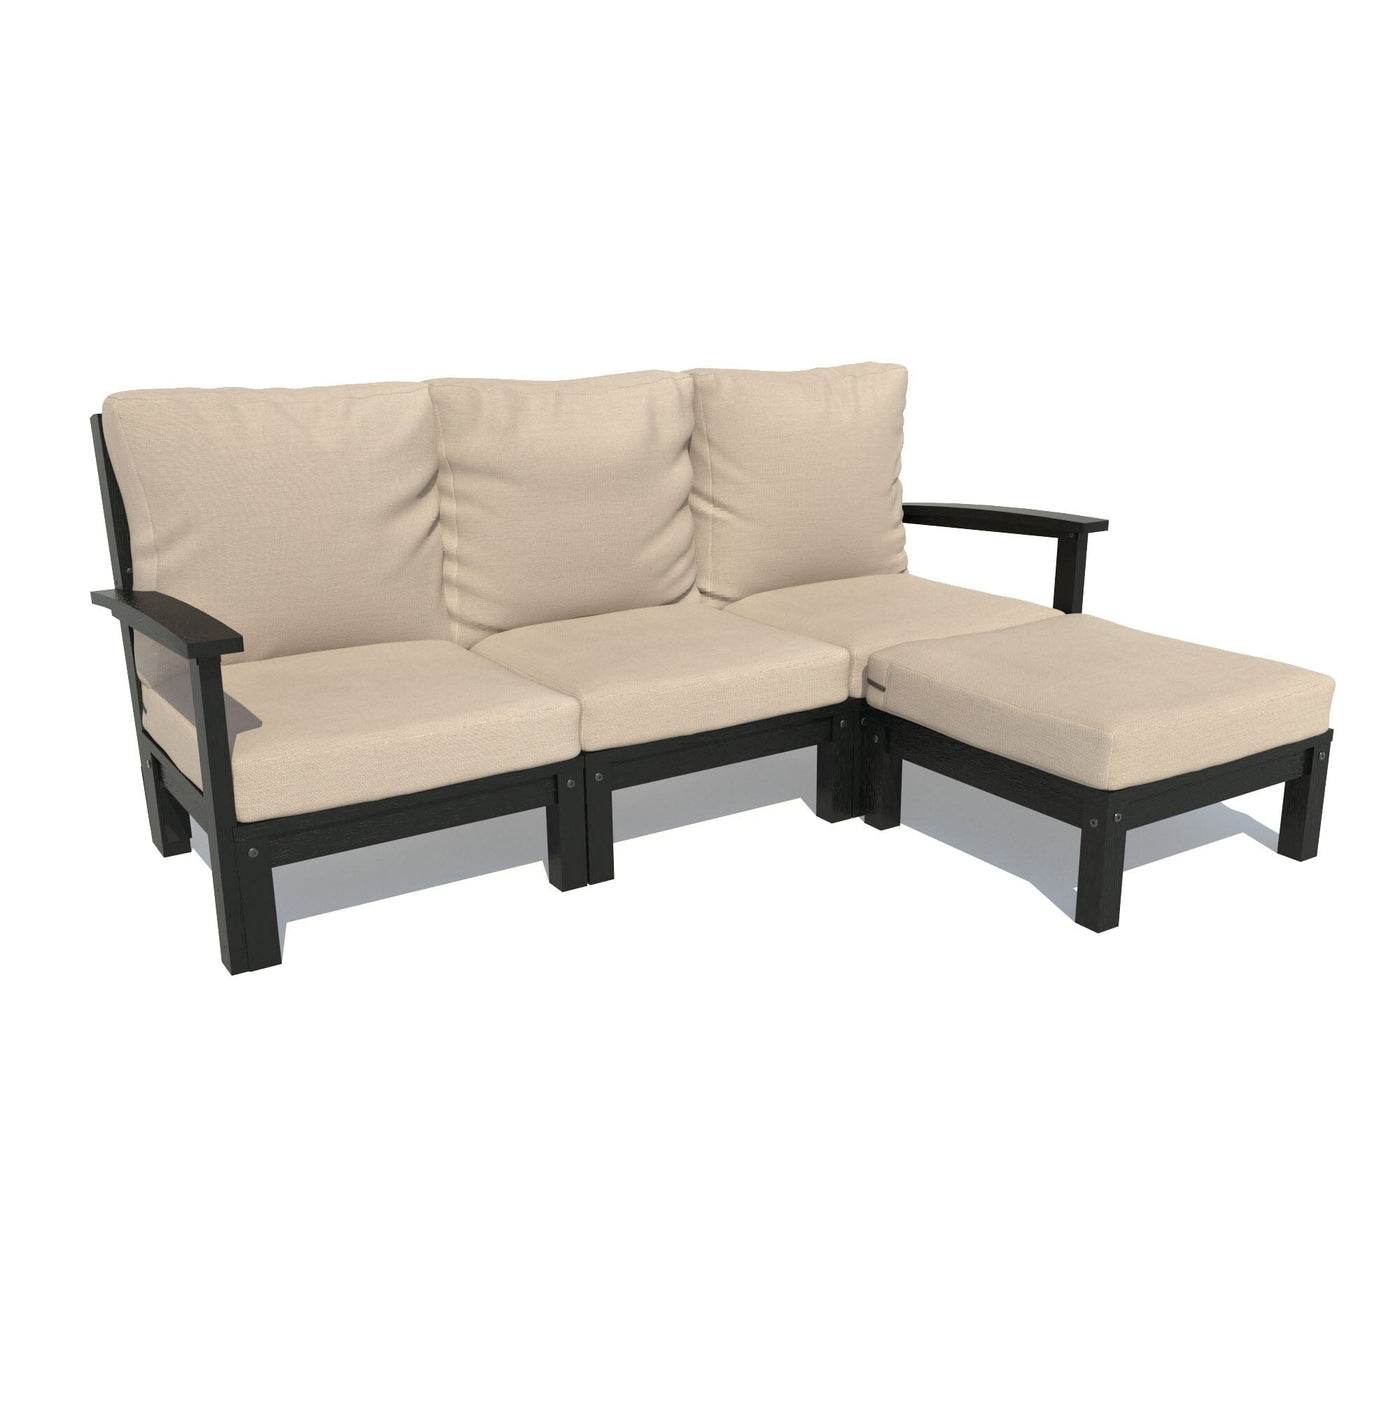 Bespoke Deep Seating: Sofa and Ottoman Deep Seating Highwood USA Driftwood Black 